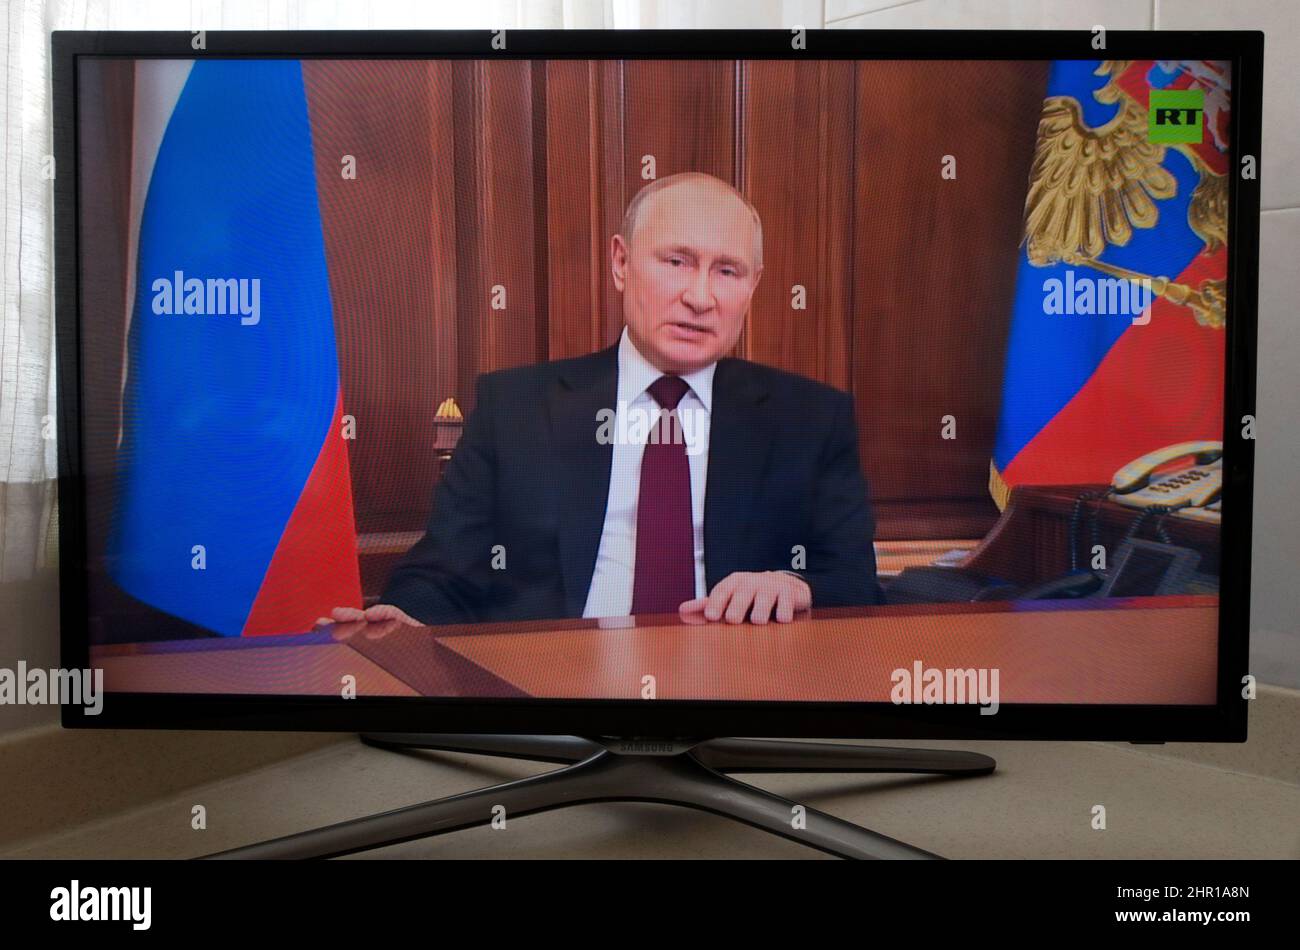 Le président russe Vladimir Poutine a parlé à la télévision de sa décision d'envahir l'Ukraine en février 2022 Banque D'Images